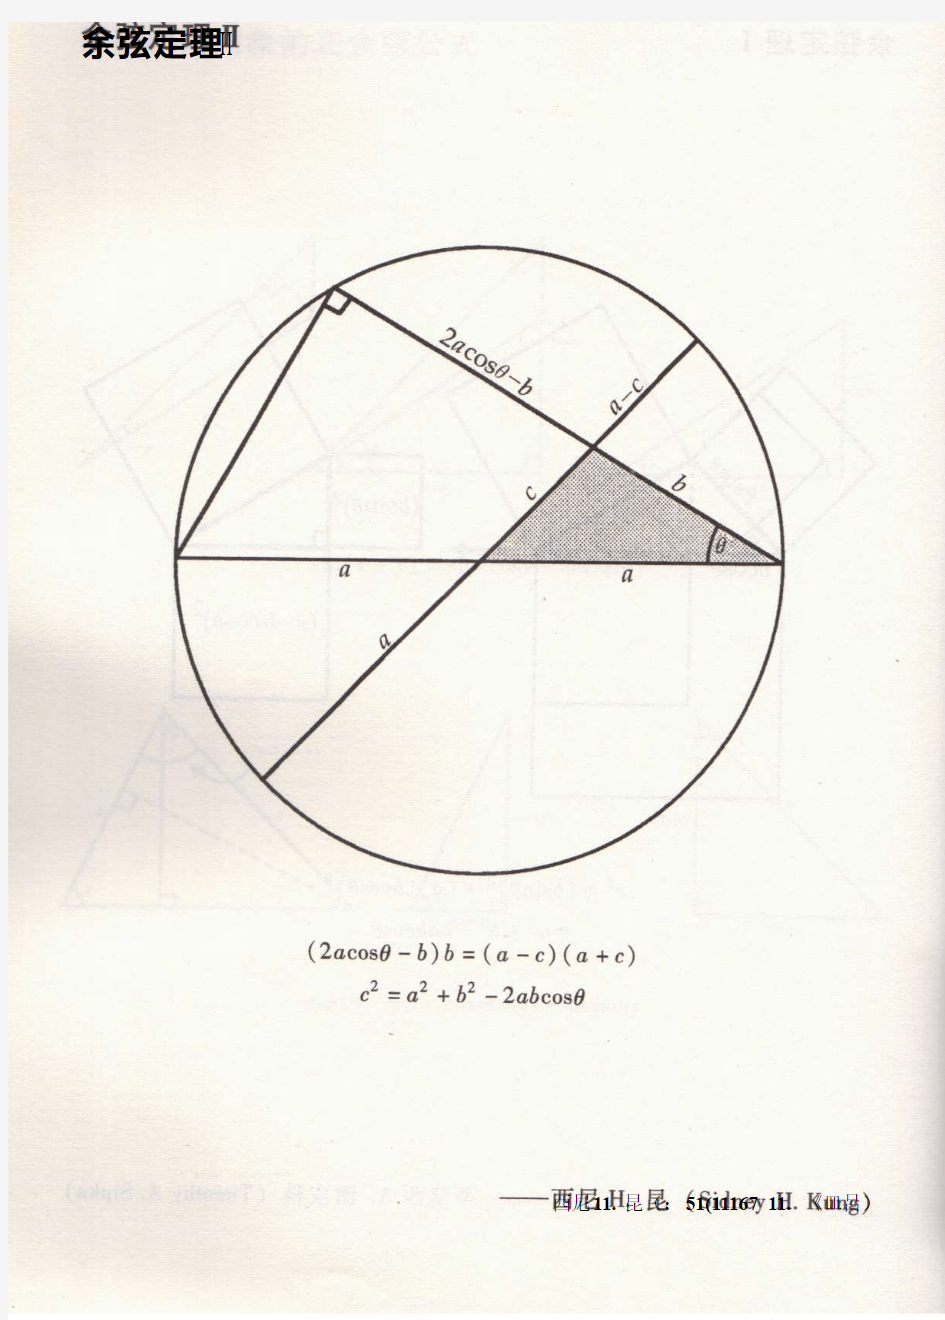 余弦定理的三种几何证明